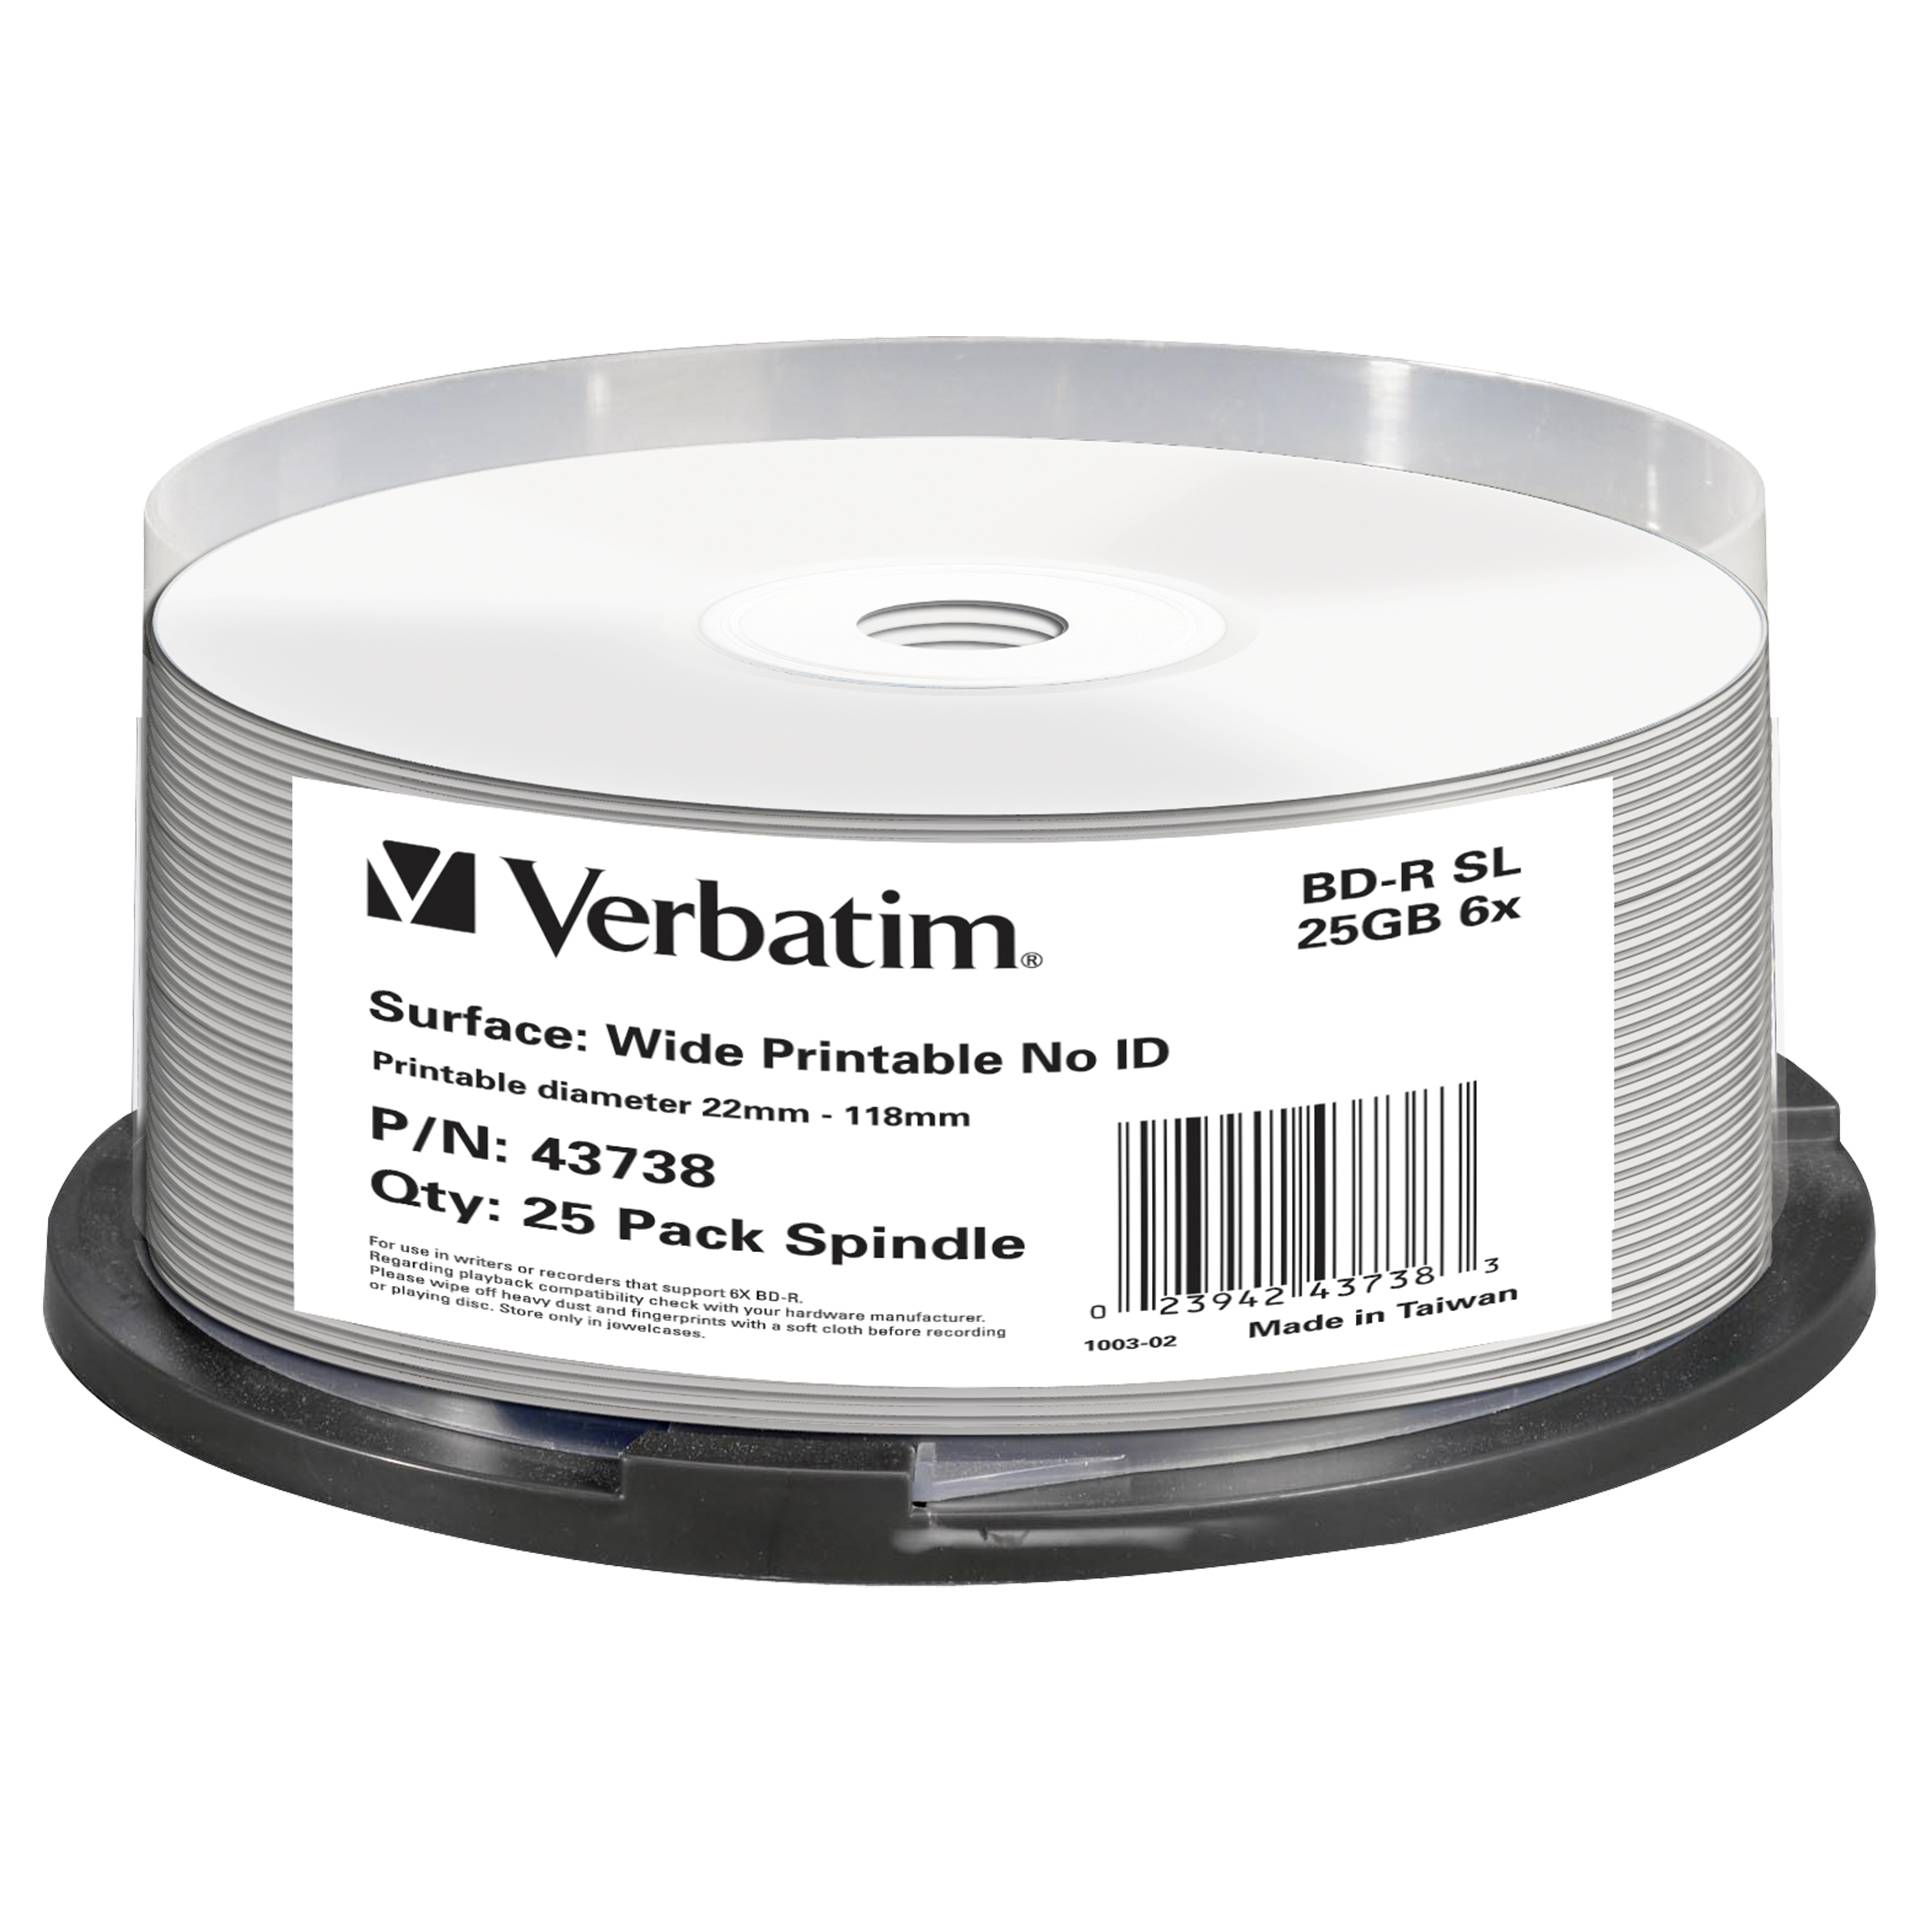 1x25 Verbatim BD-R Blu-Ray 25GB 6x Speed wide printable NO-I